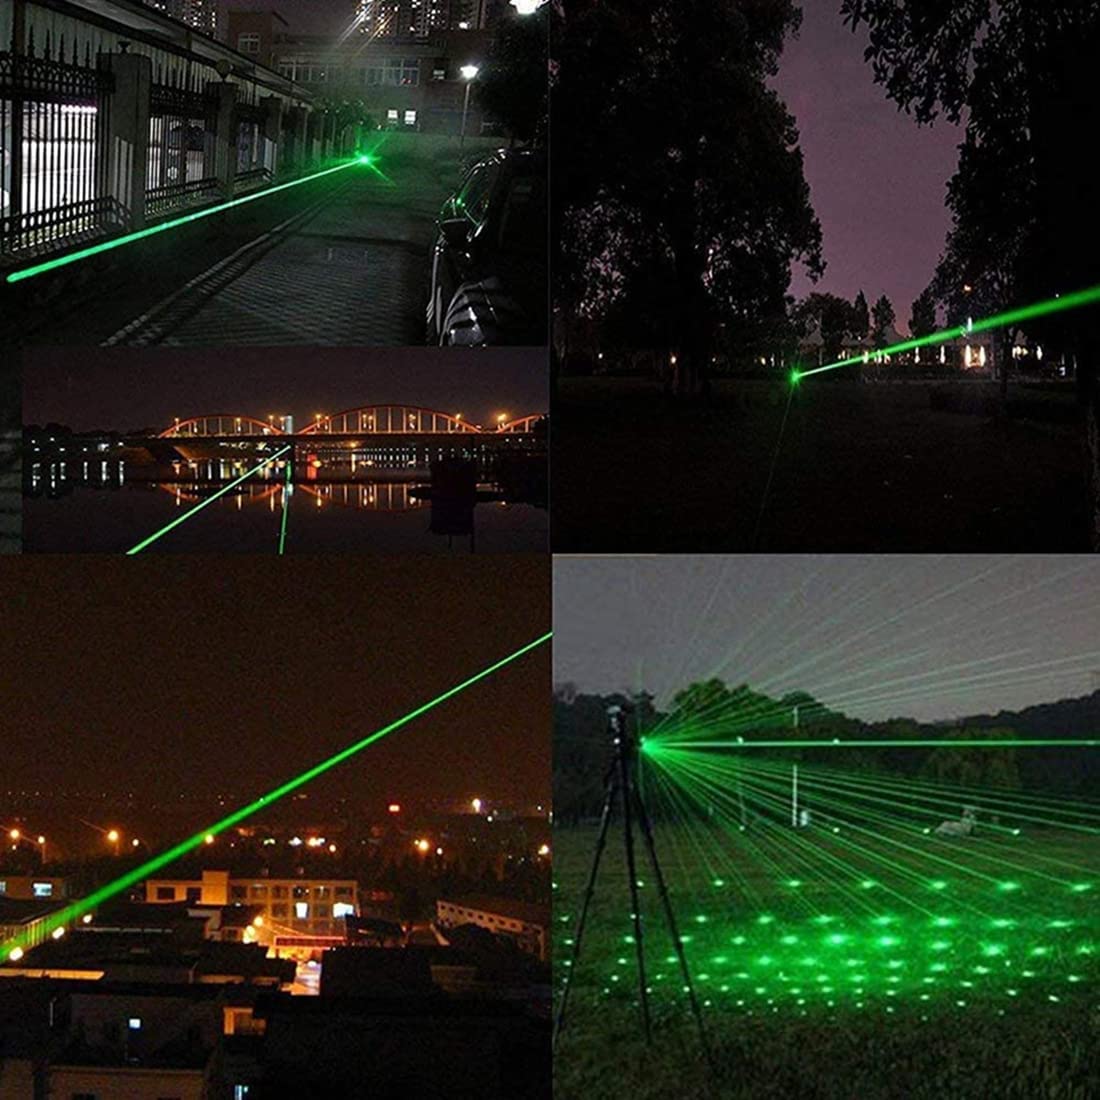 Stylo pointeur laser vert 250mW qui allume allumette